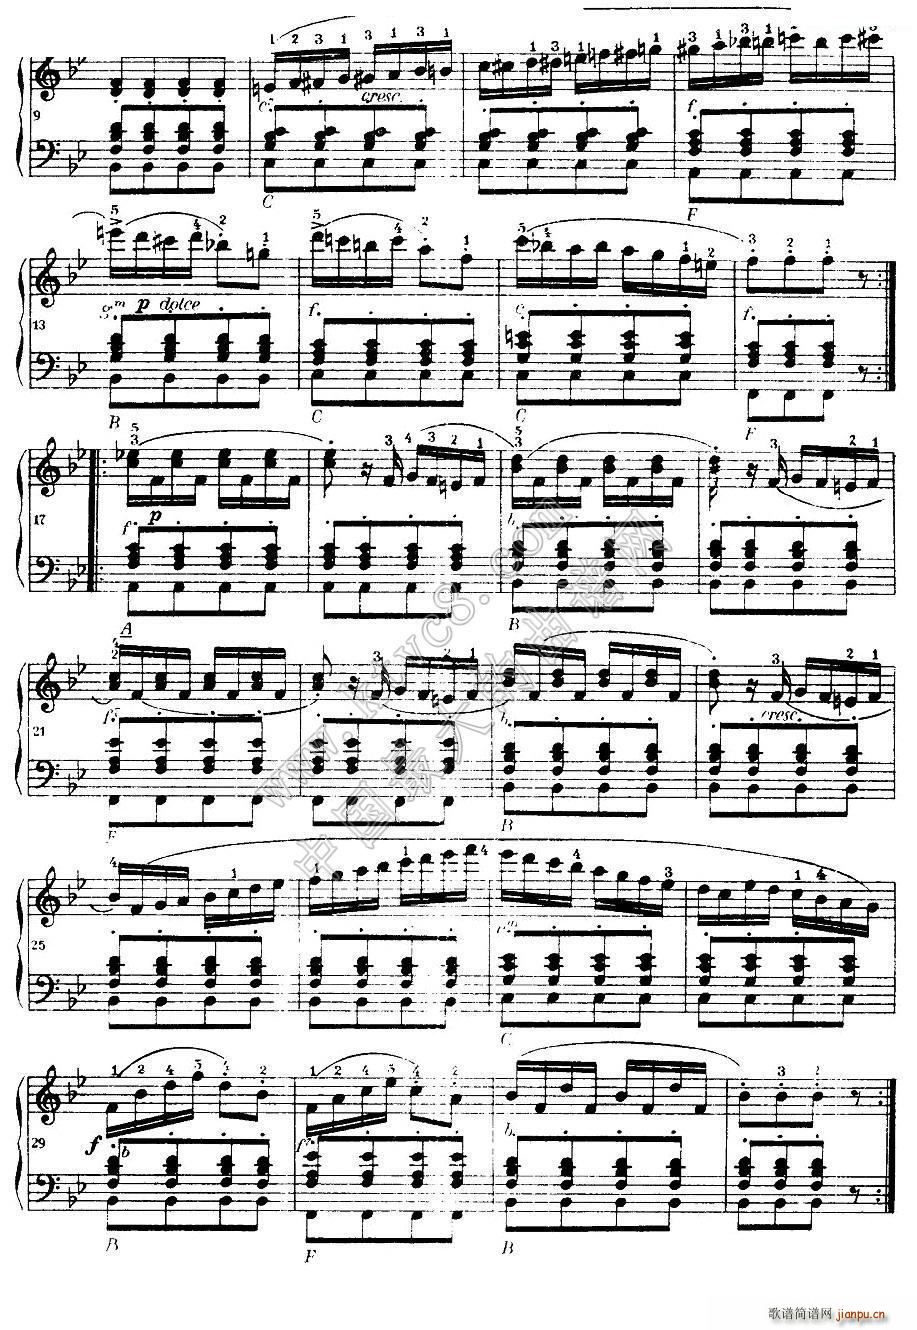 车尔尼手风琴练习曲集 第Ⅰ册 22 36(手风琴谱)12